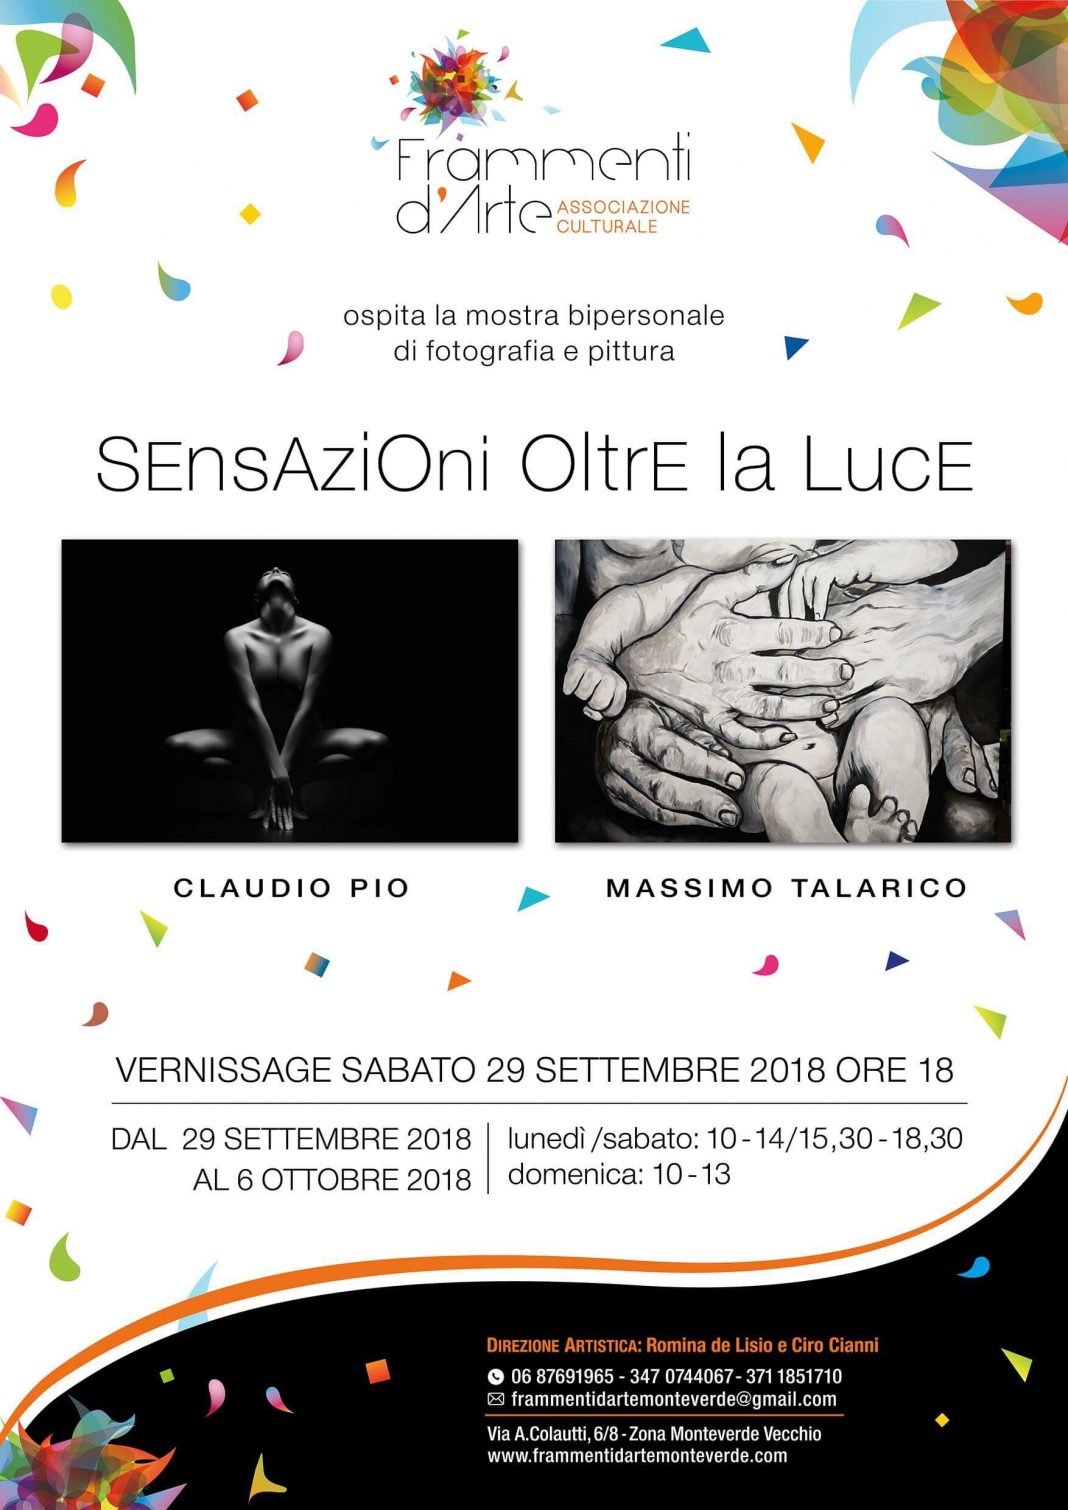 Claudio Pio / Massimo Talarico – Sensazioni oltre la Lucehttps://www.exibart.com/repository/media/eventi/2018/09/claudio-pio-massimo-talarico-8211-sensazioni-oltre-la-luce-1068x1510.jpg